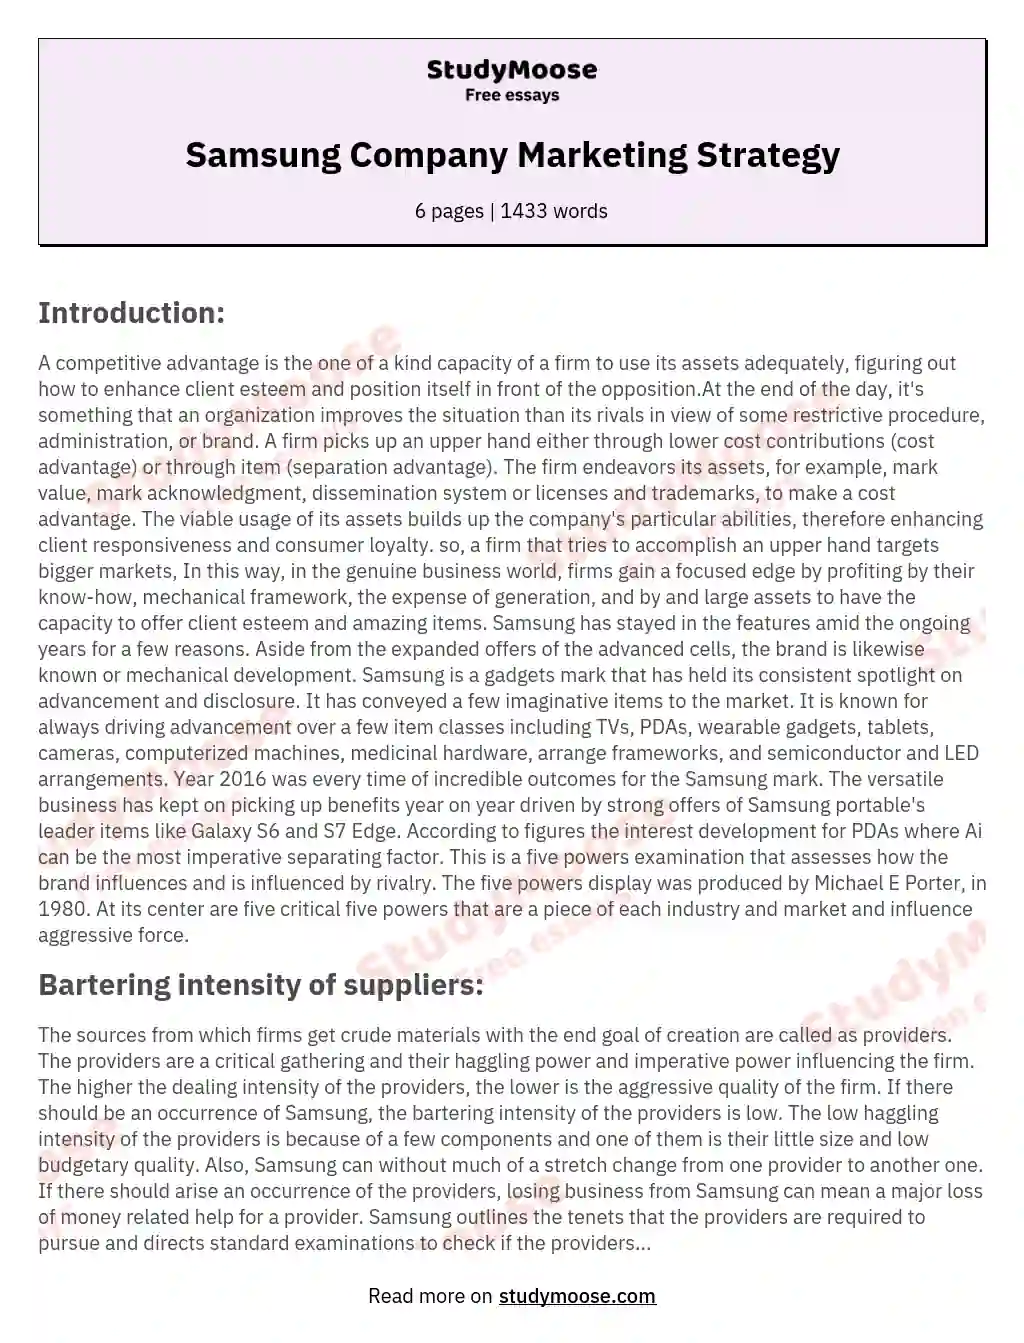 Samsung Company Marketing Strategy essay